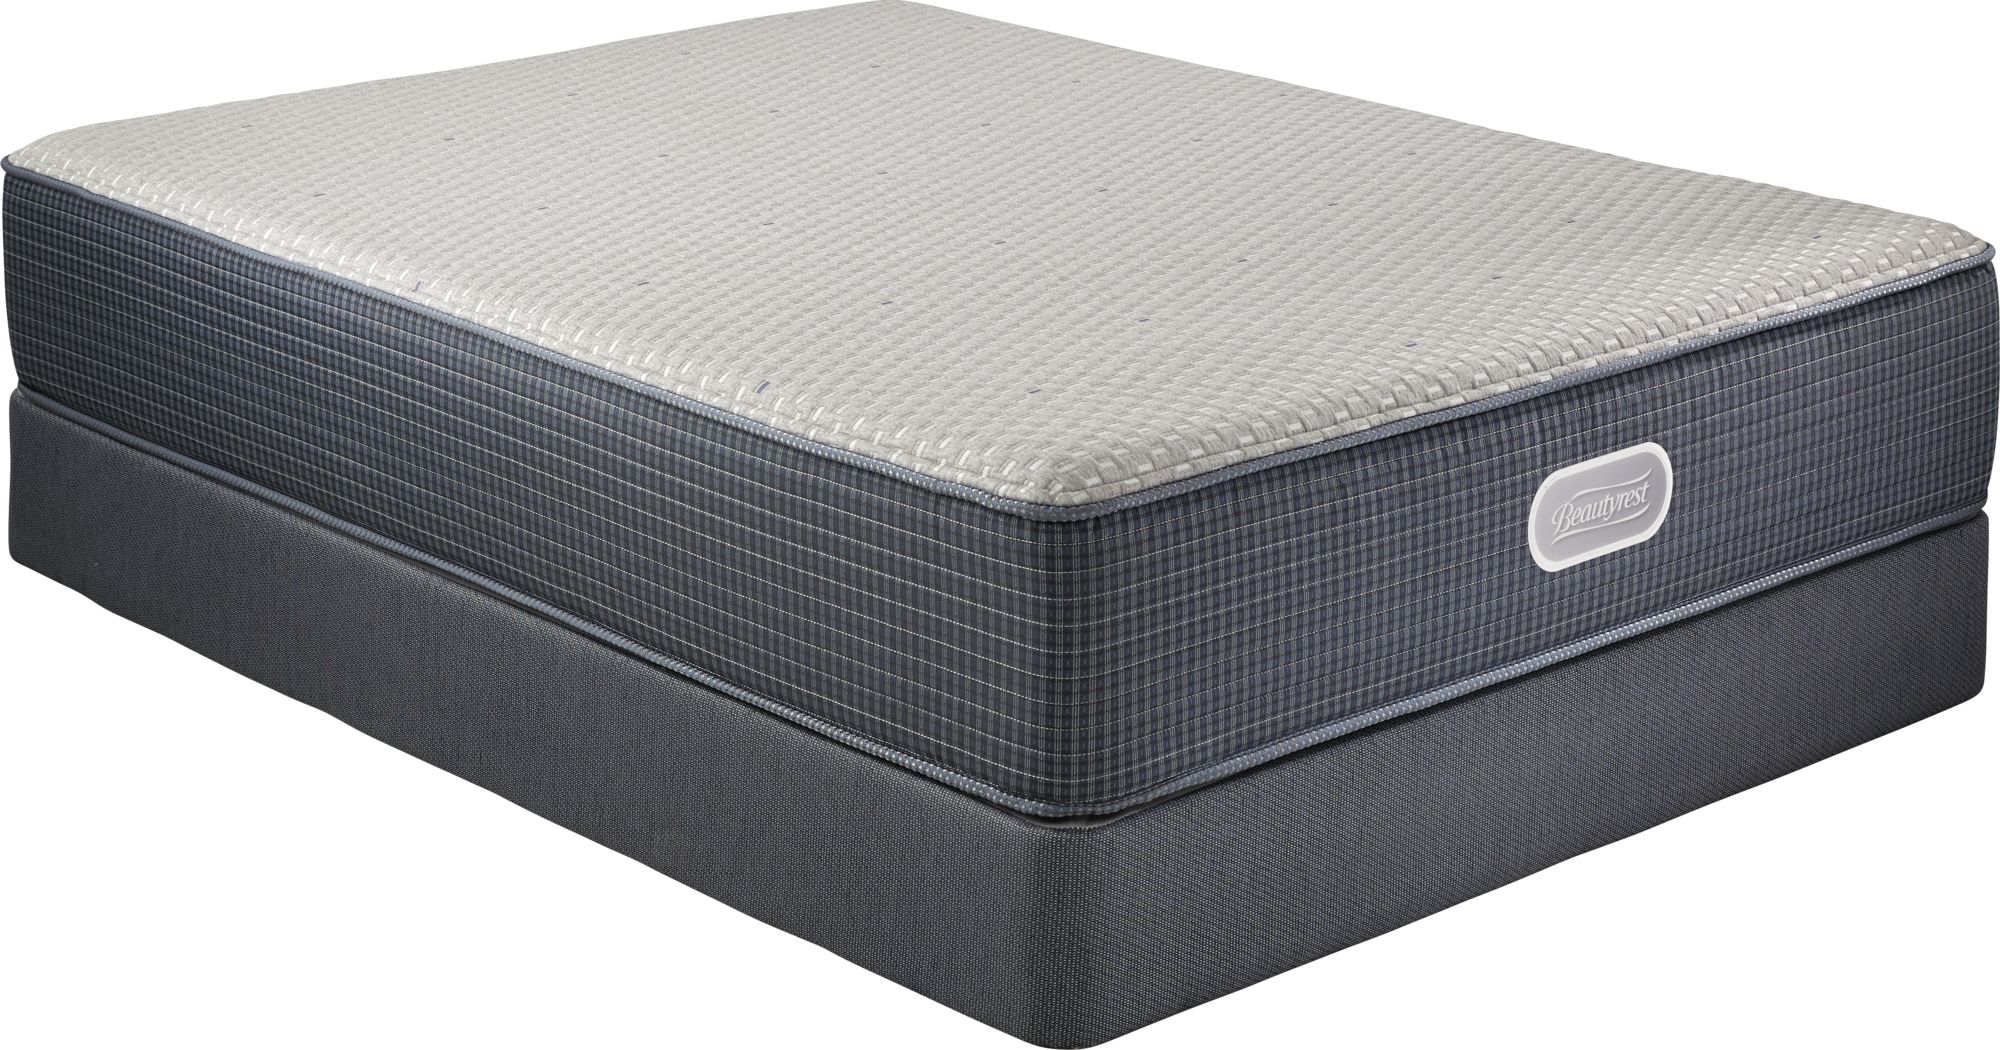 beautyrest hybrid geneva lake queen mattress set reviews